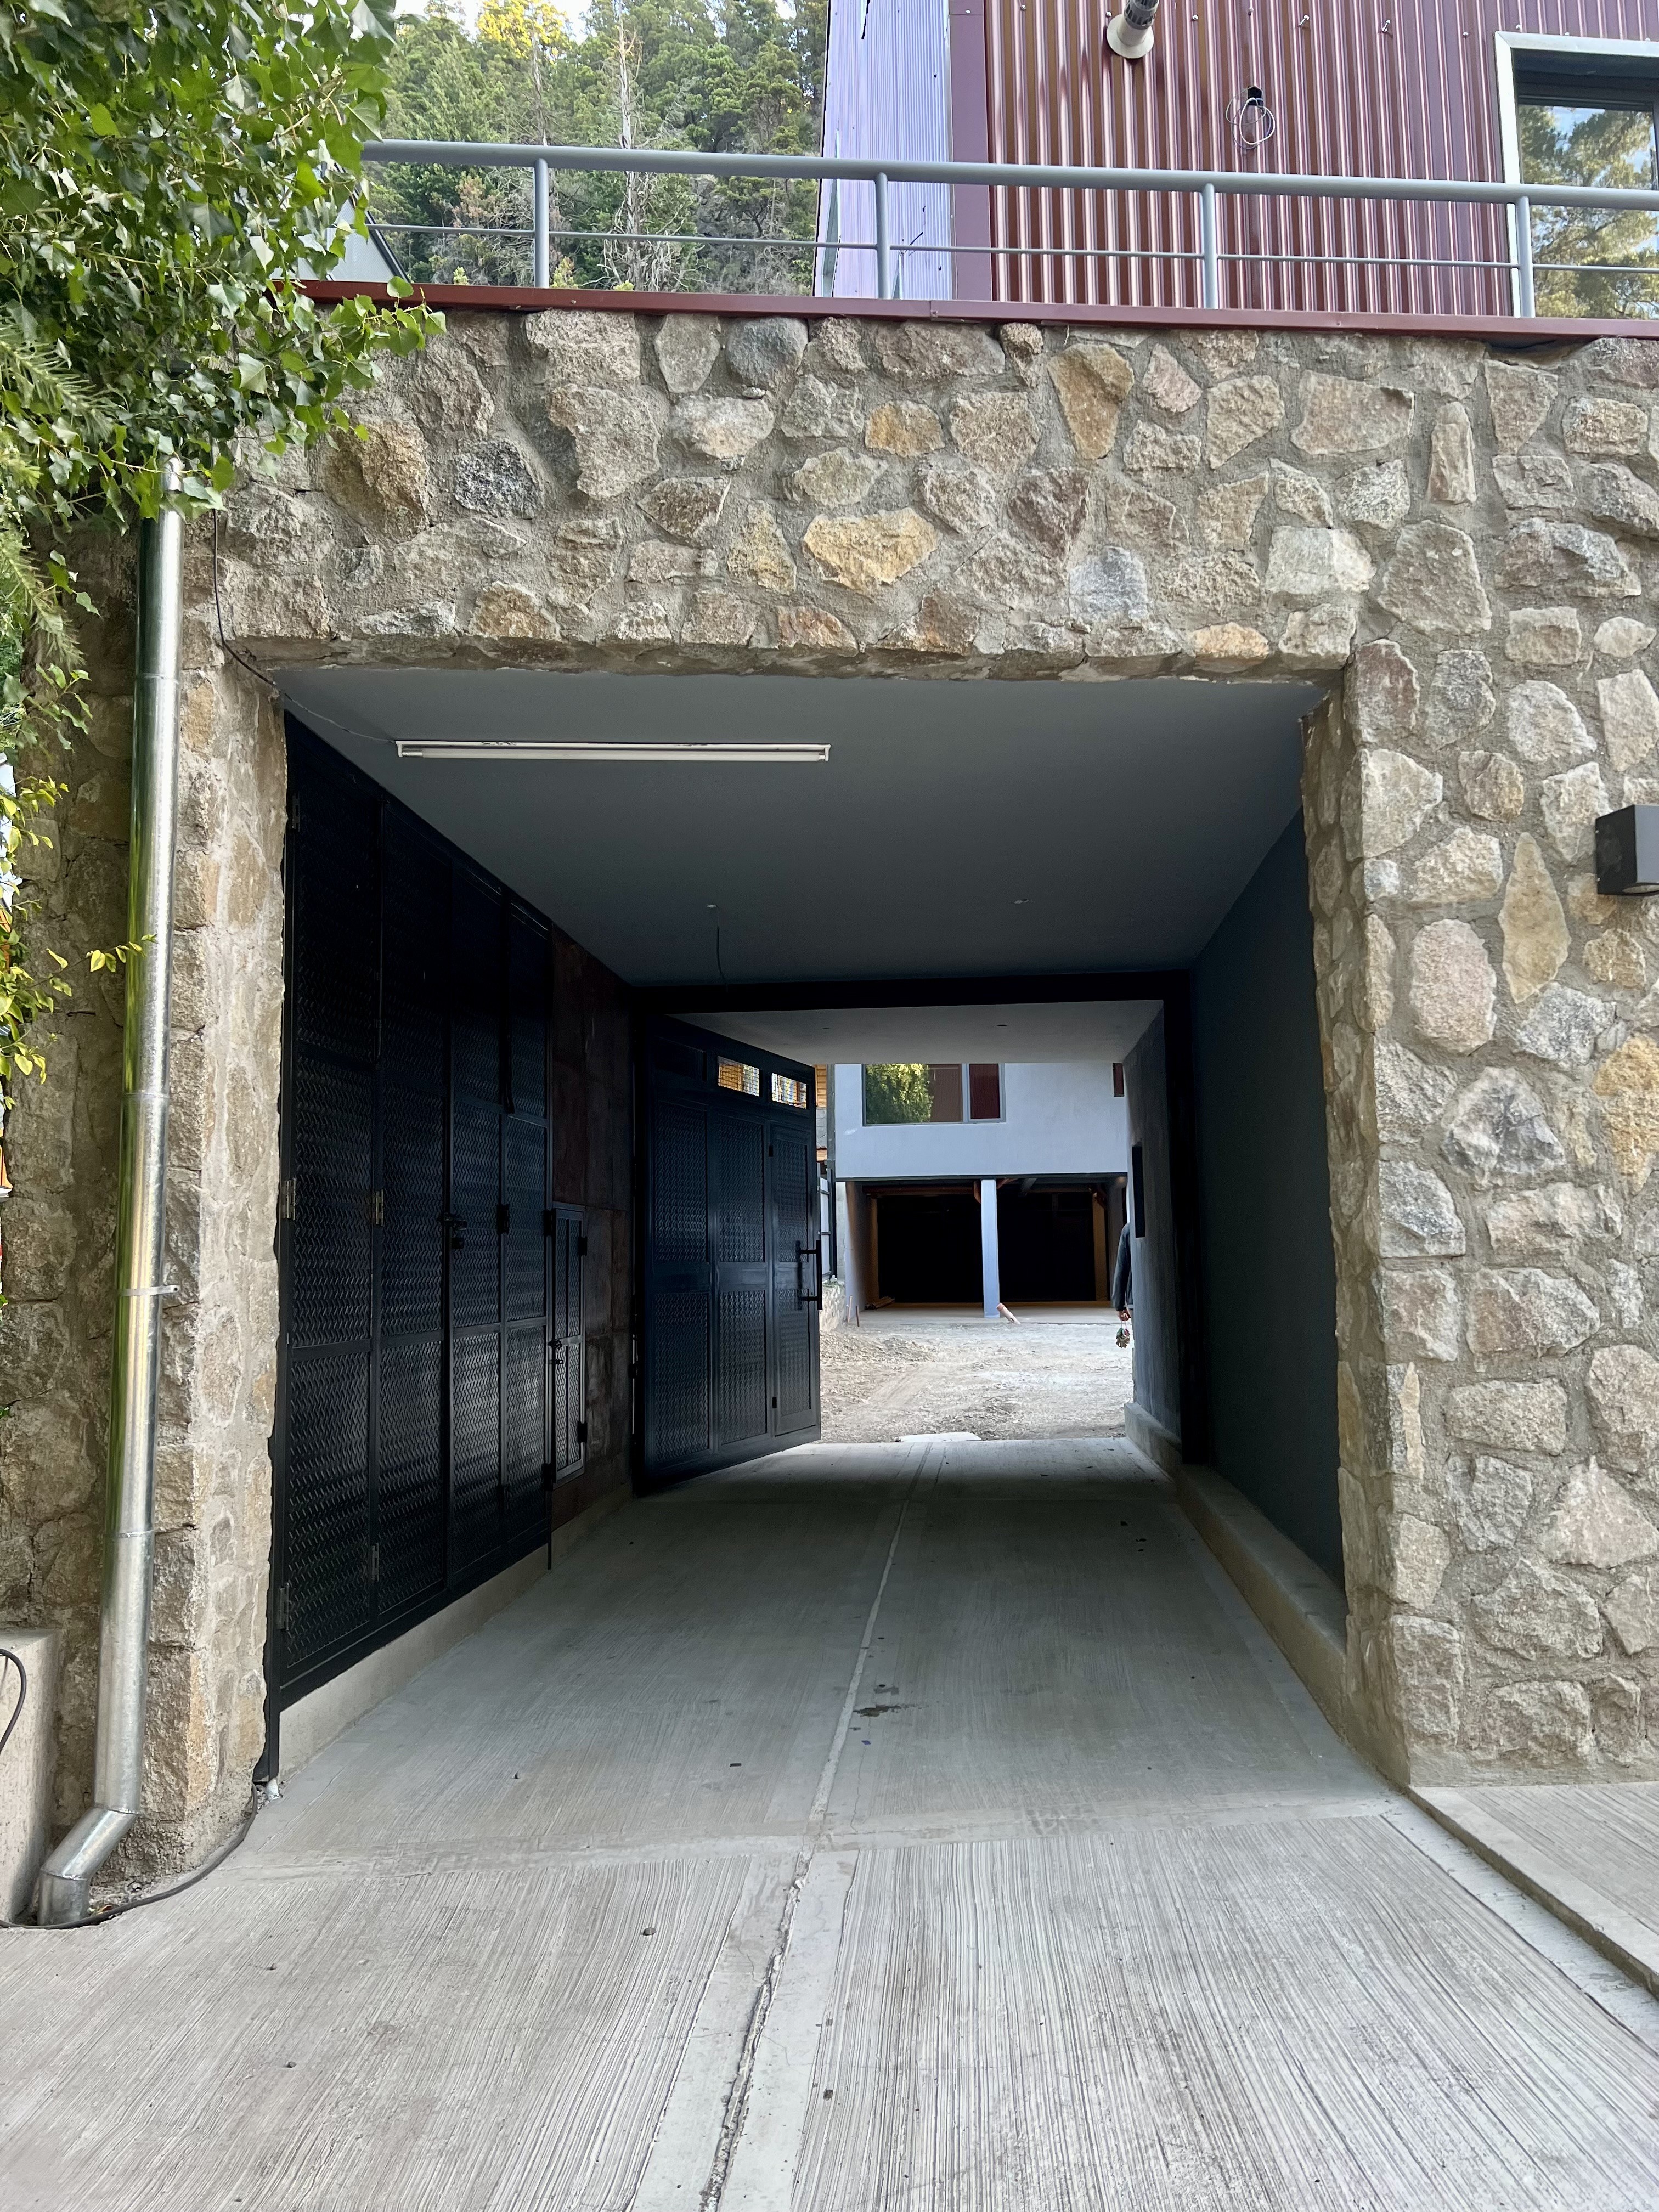 D210 - Departamento a estrenar de 1 dormitorio 61 m2 y 6,5 m2 de terraza  - Bajada de los Andes - Zona Centro